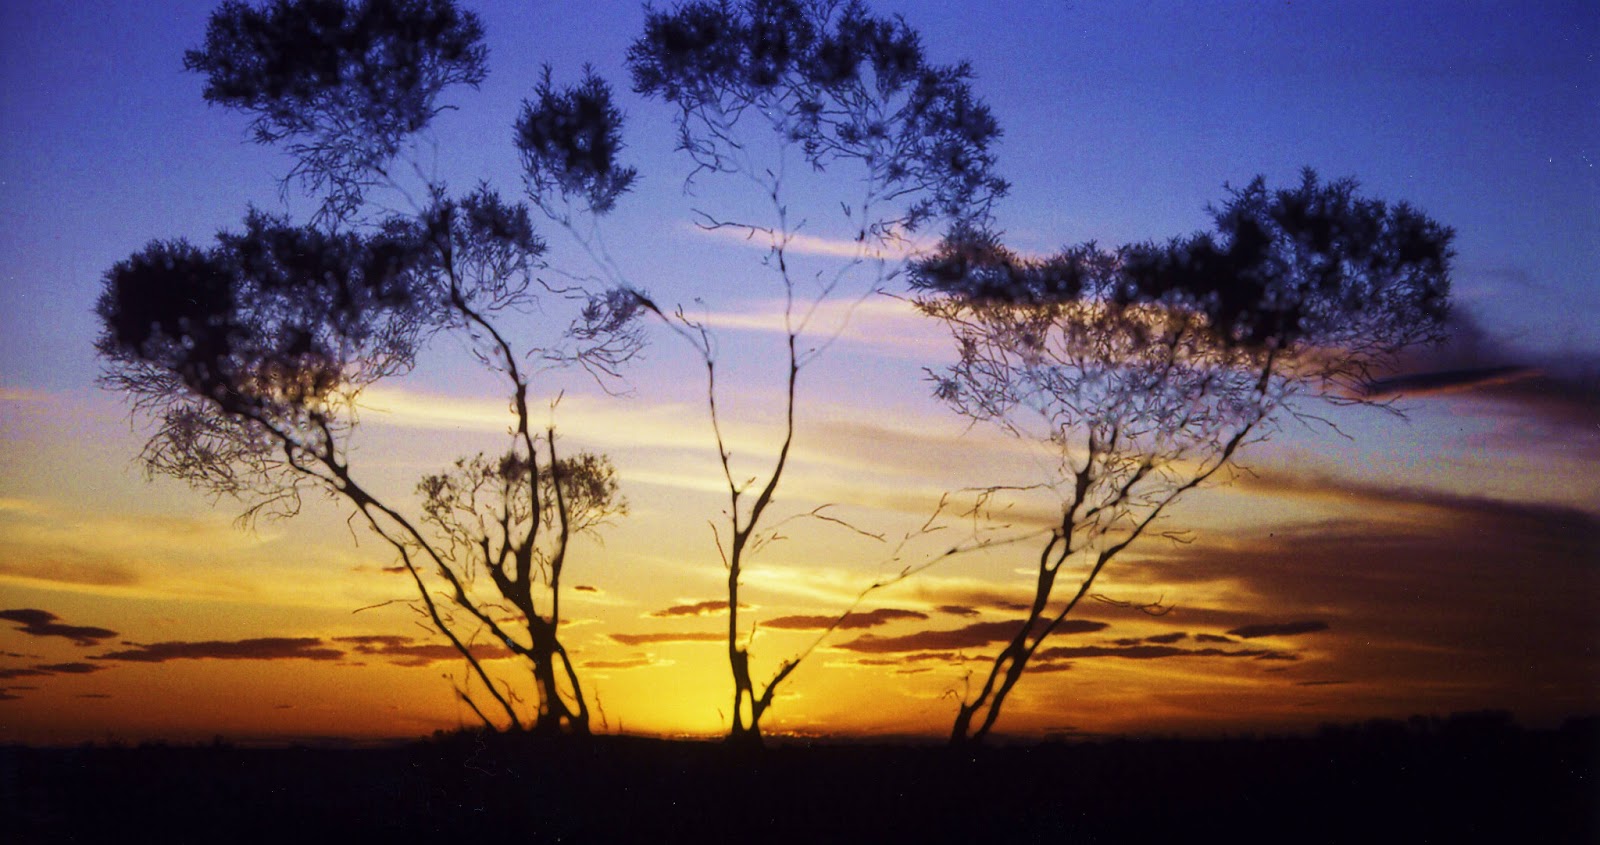 Sunset+Outback+Australia.jpg